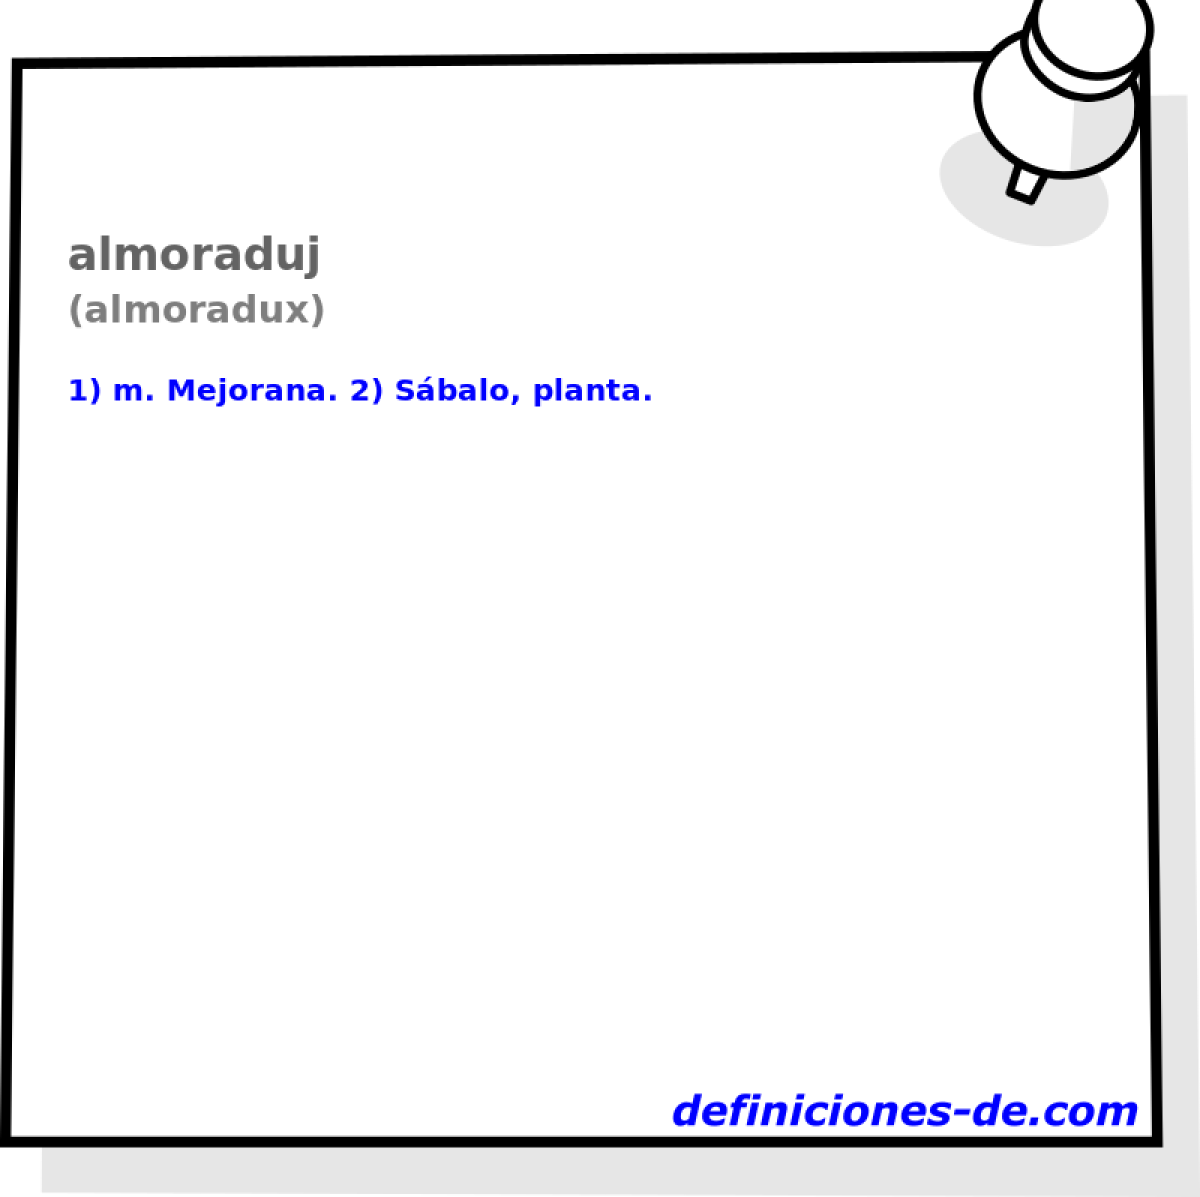 almoraduj (almoradux)